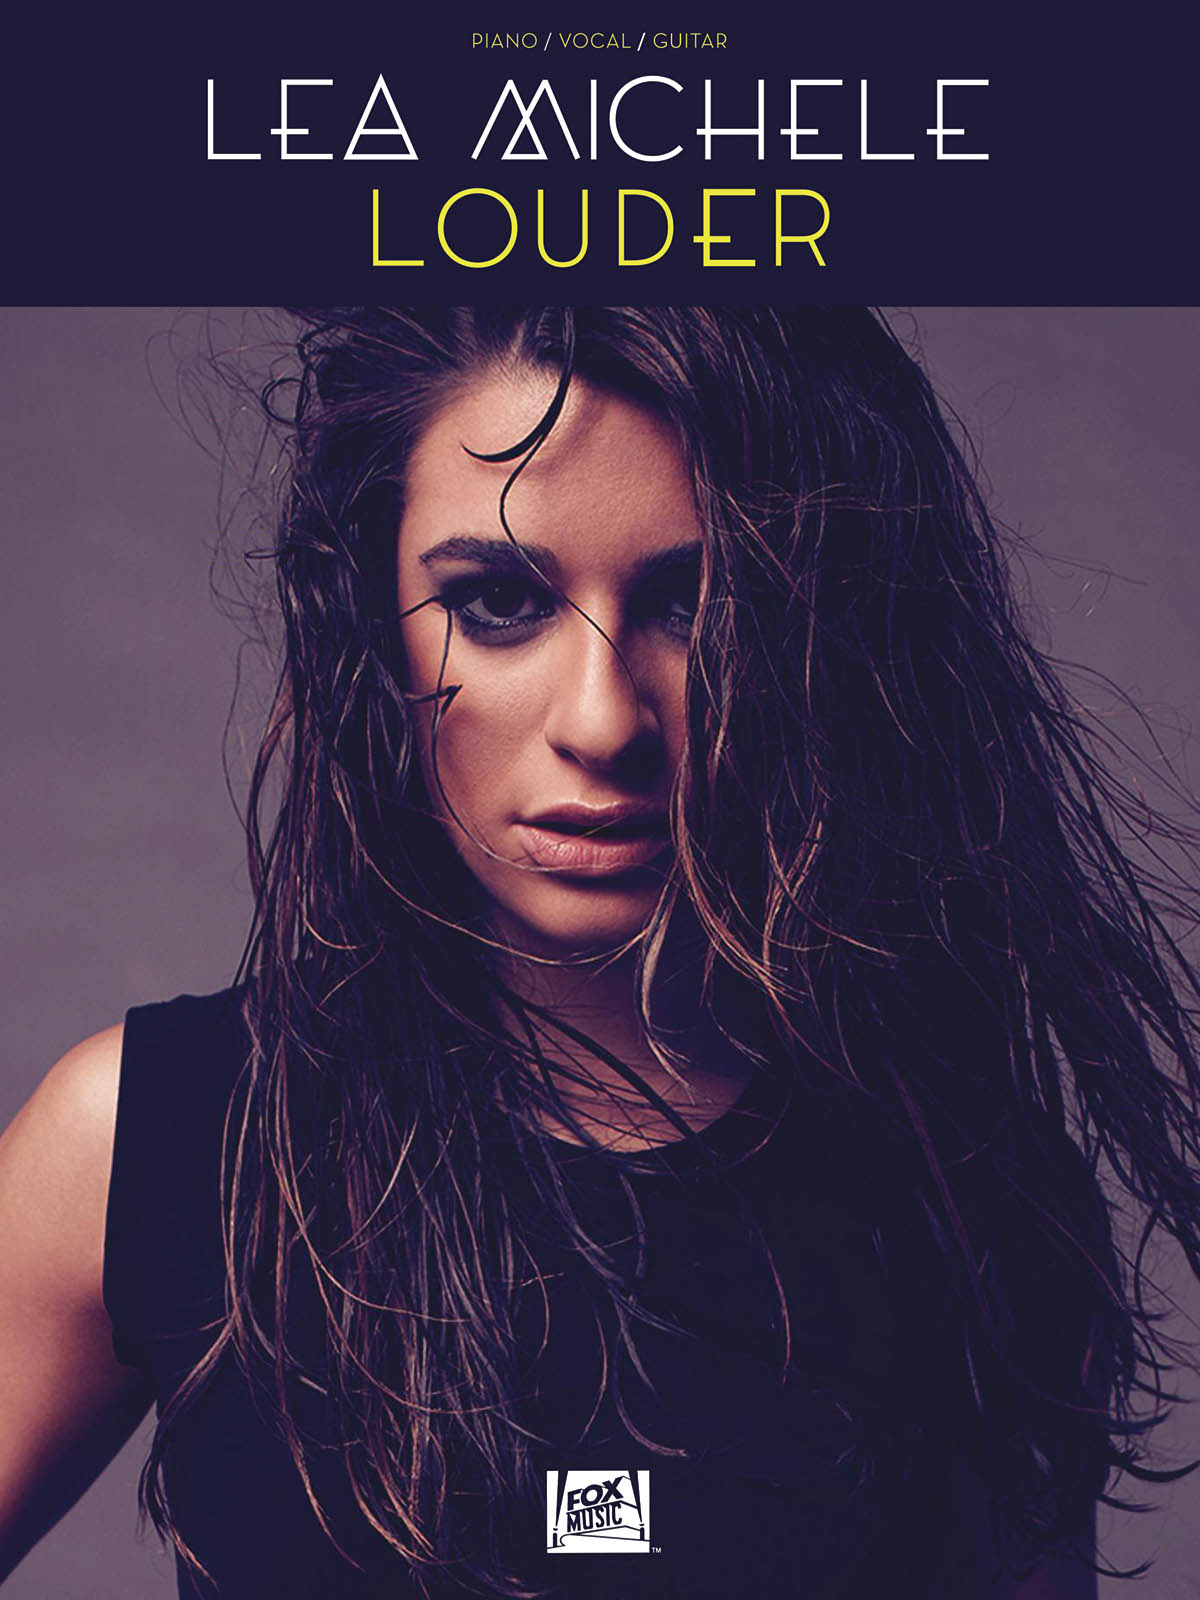 Lea Michele: Lea Michele - Louder: Piano  Vocal and Guitar: Album Songbook